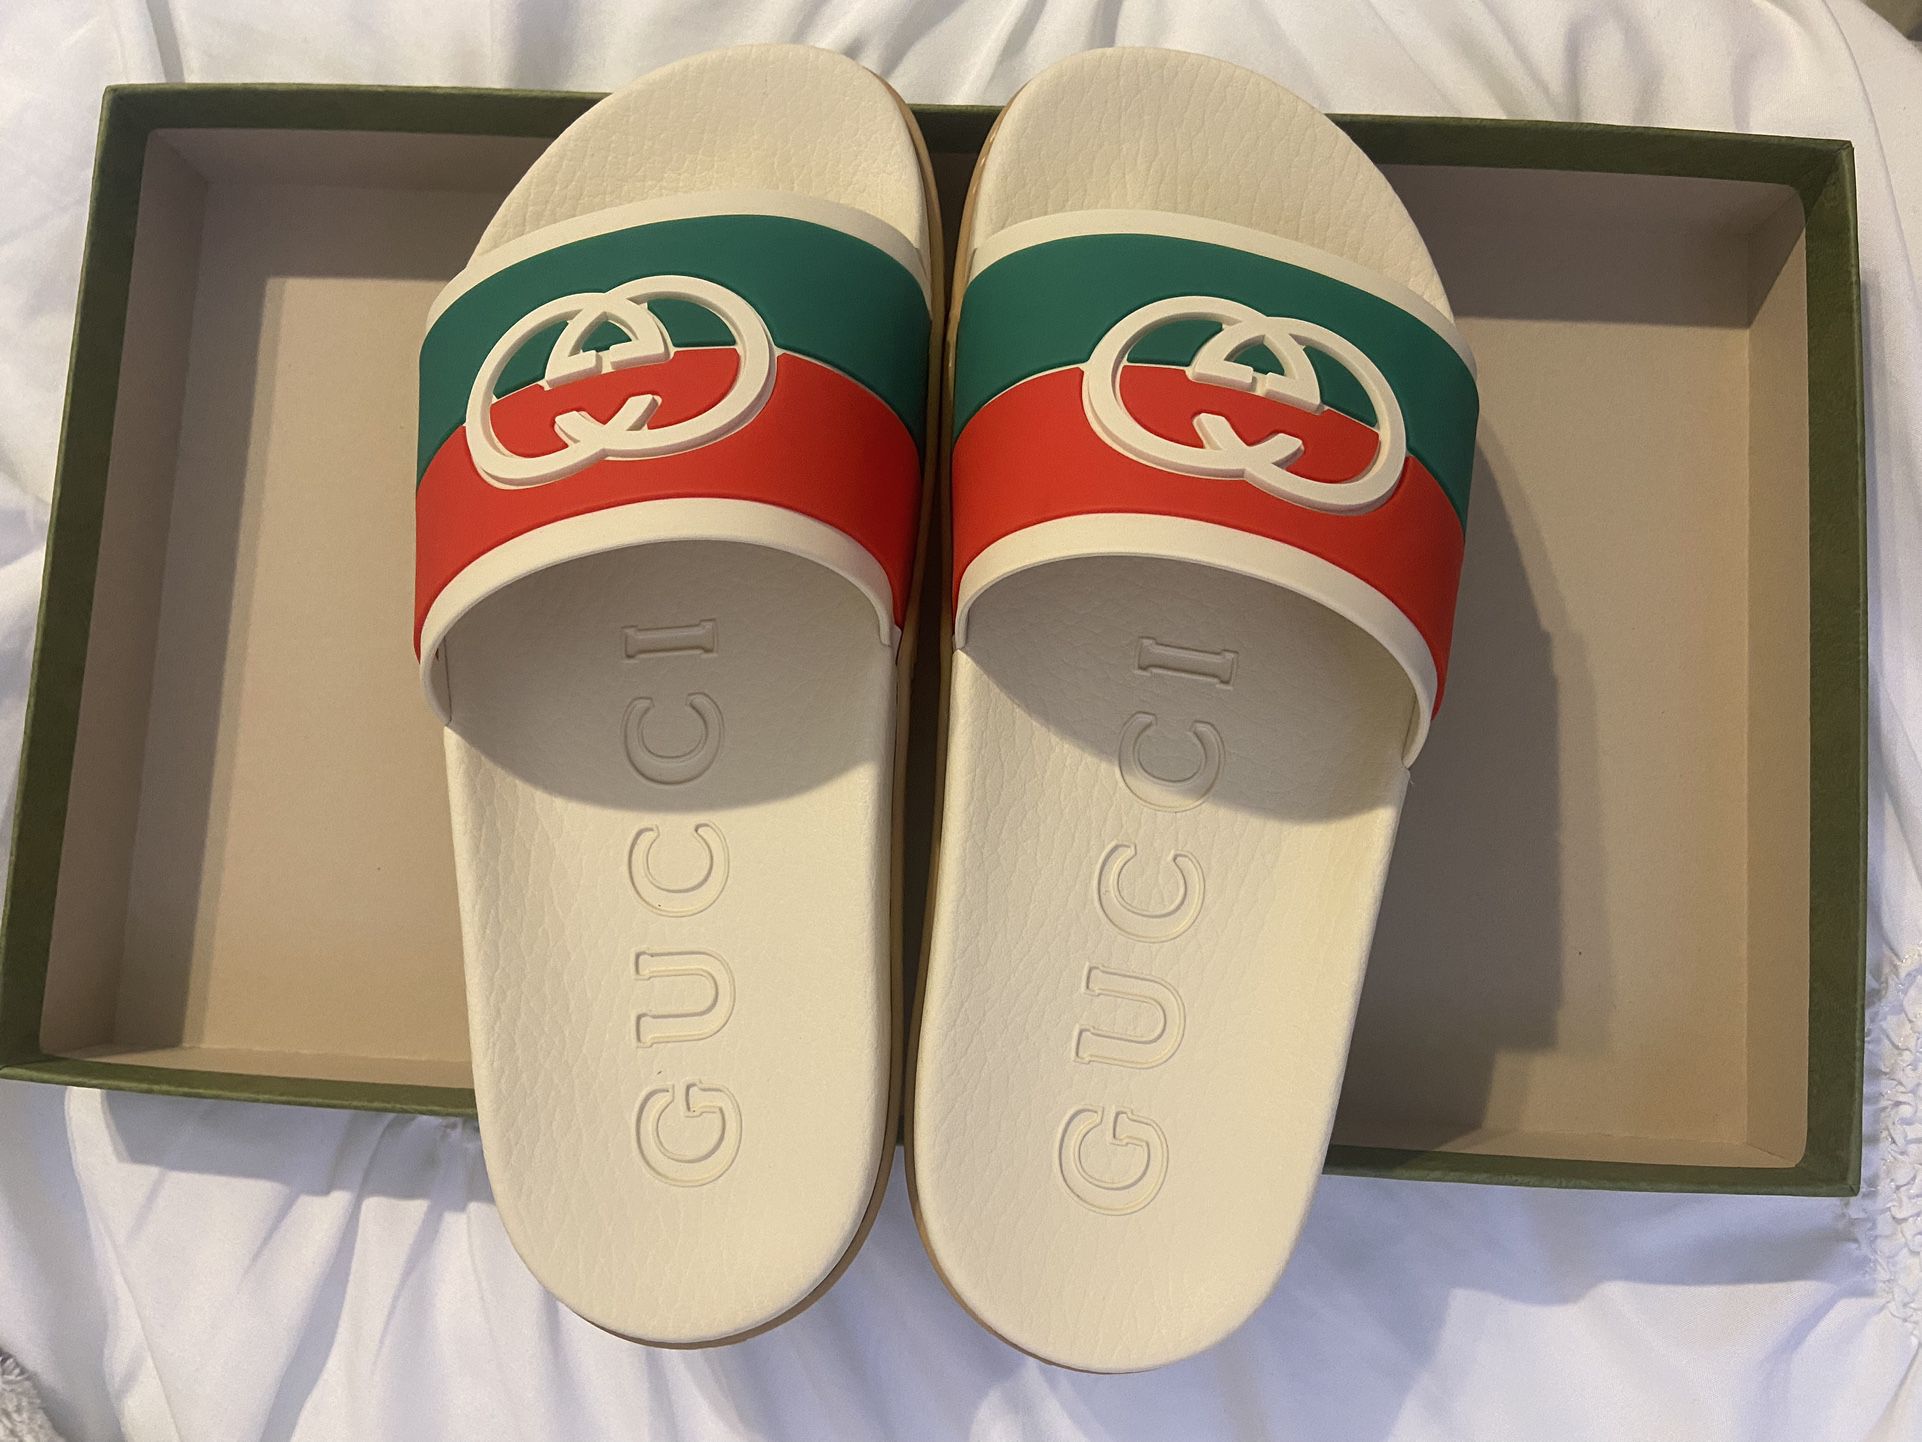 Gucci Wmns Slides Interlocking G - White Red Green